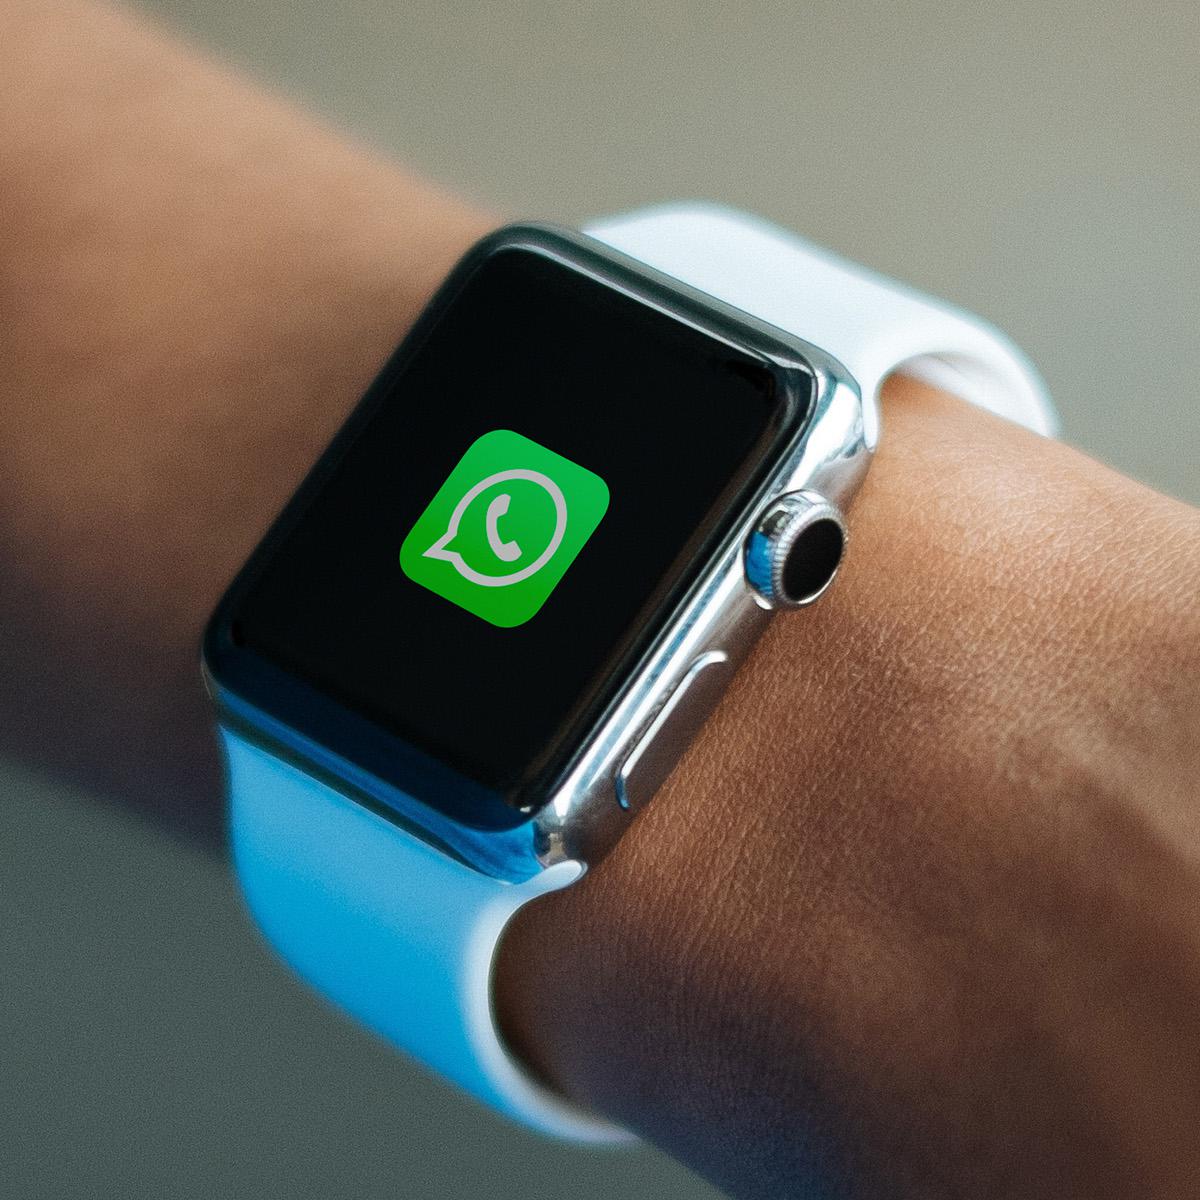 Utilizar WhatsApp Apple Watch